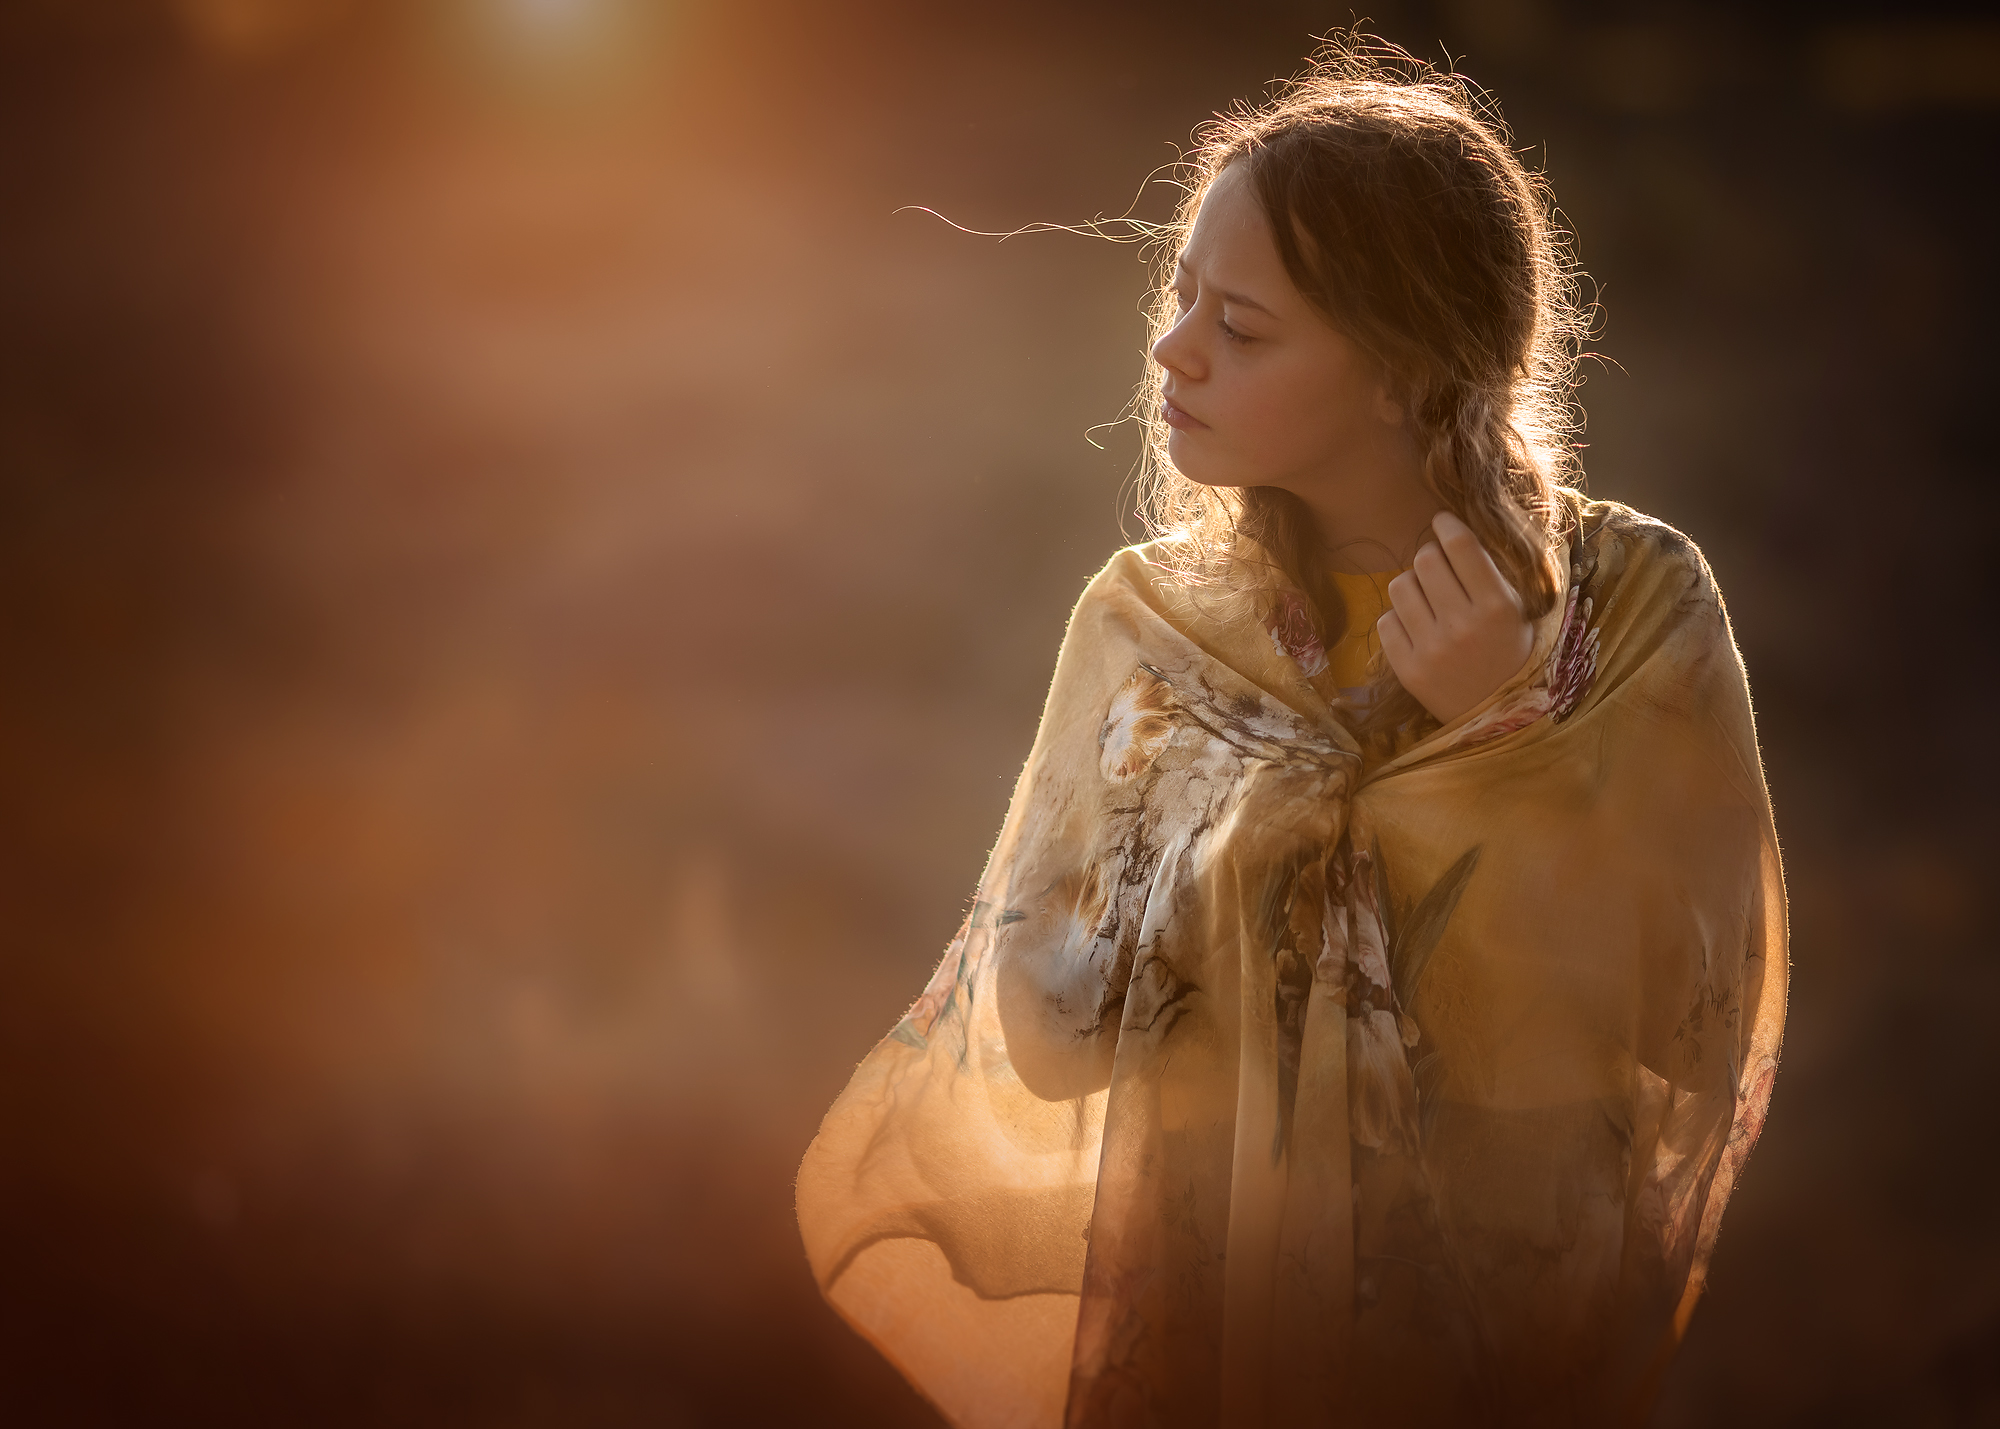 Golden hour portret van een jonge vrouw met tegenlicht en een gele sjaal door natuurlijk licht fotograaf Willie Kers uit Apeldoorn